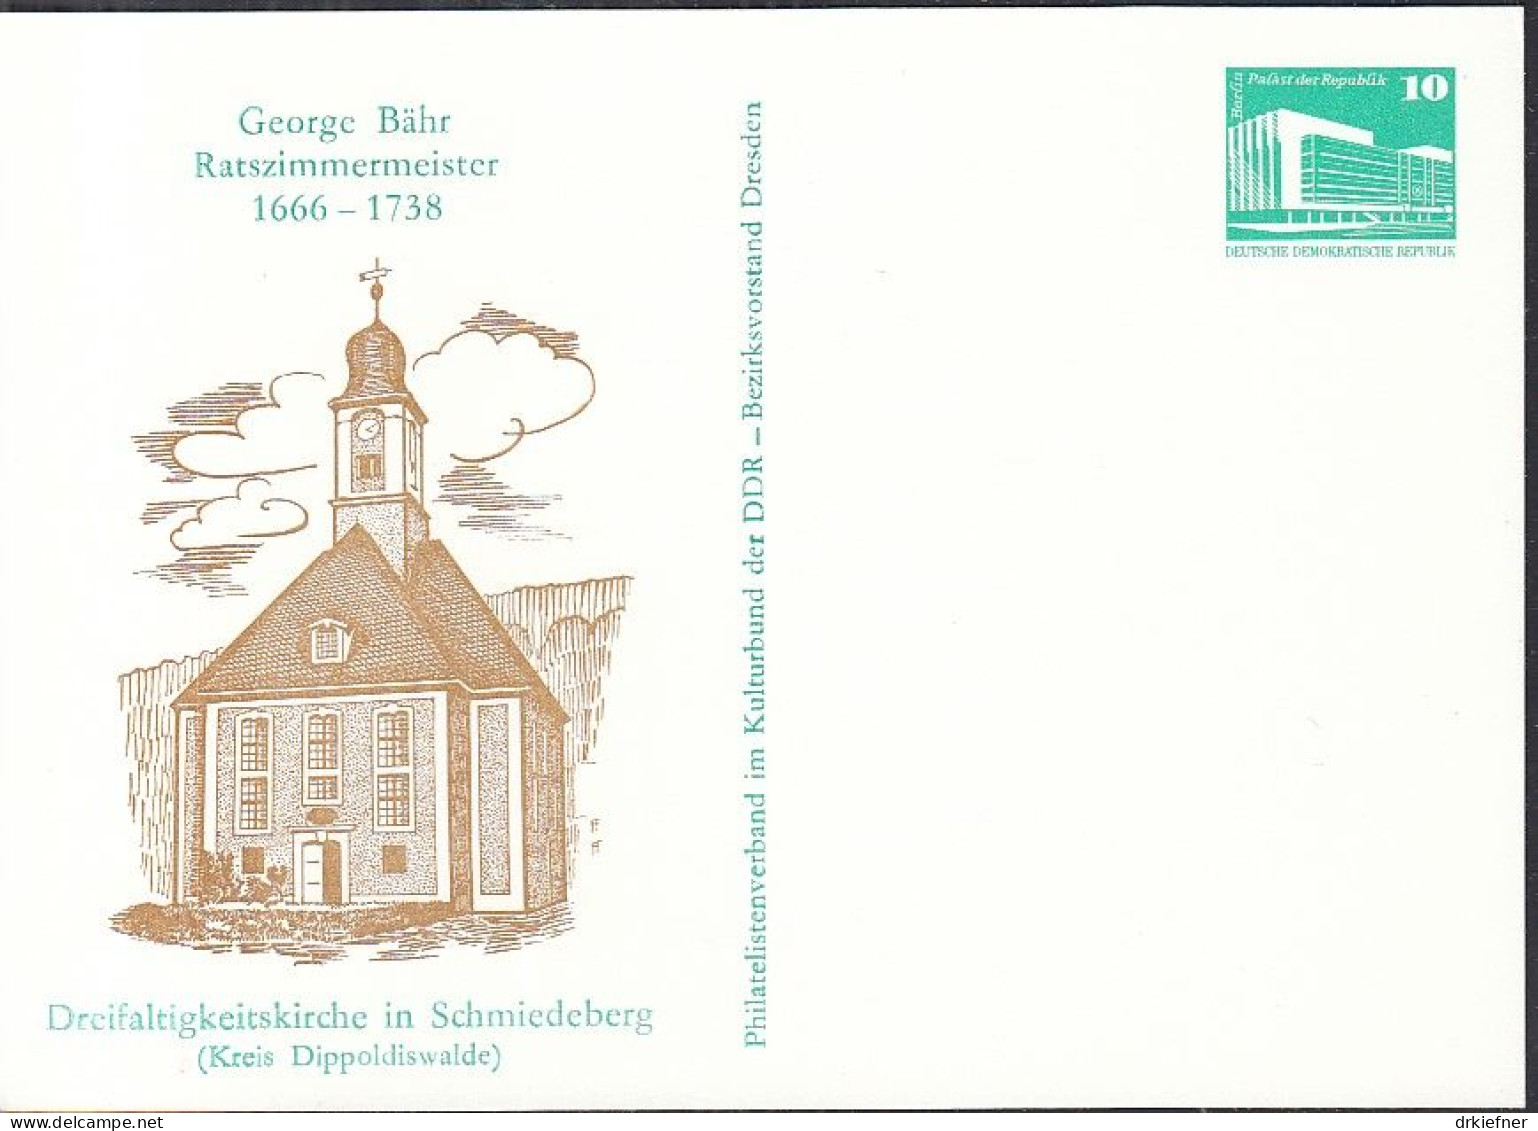 DDR PP 18, Ungebraucht, George Bähr, Ratszimmermeister, Dreifaltigkeitskirche Schmiedeberg, 1988 - Private Postcards - Mint